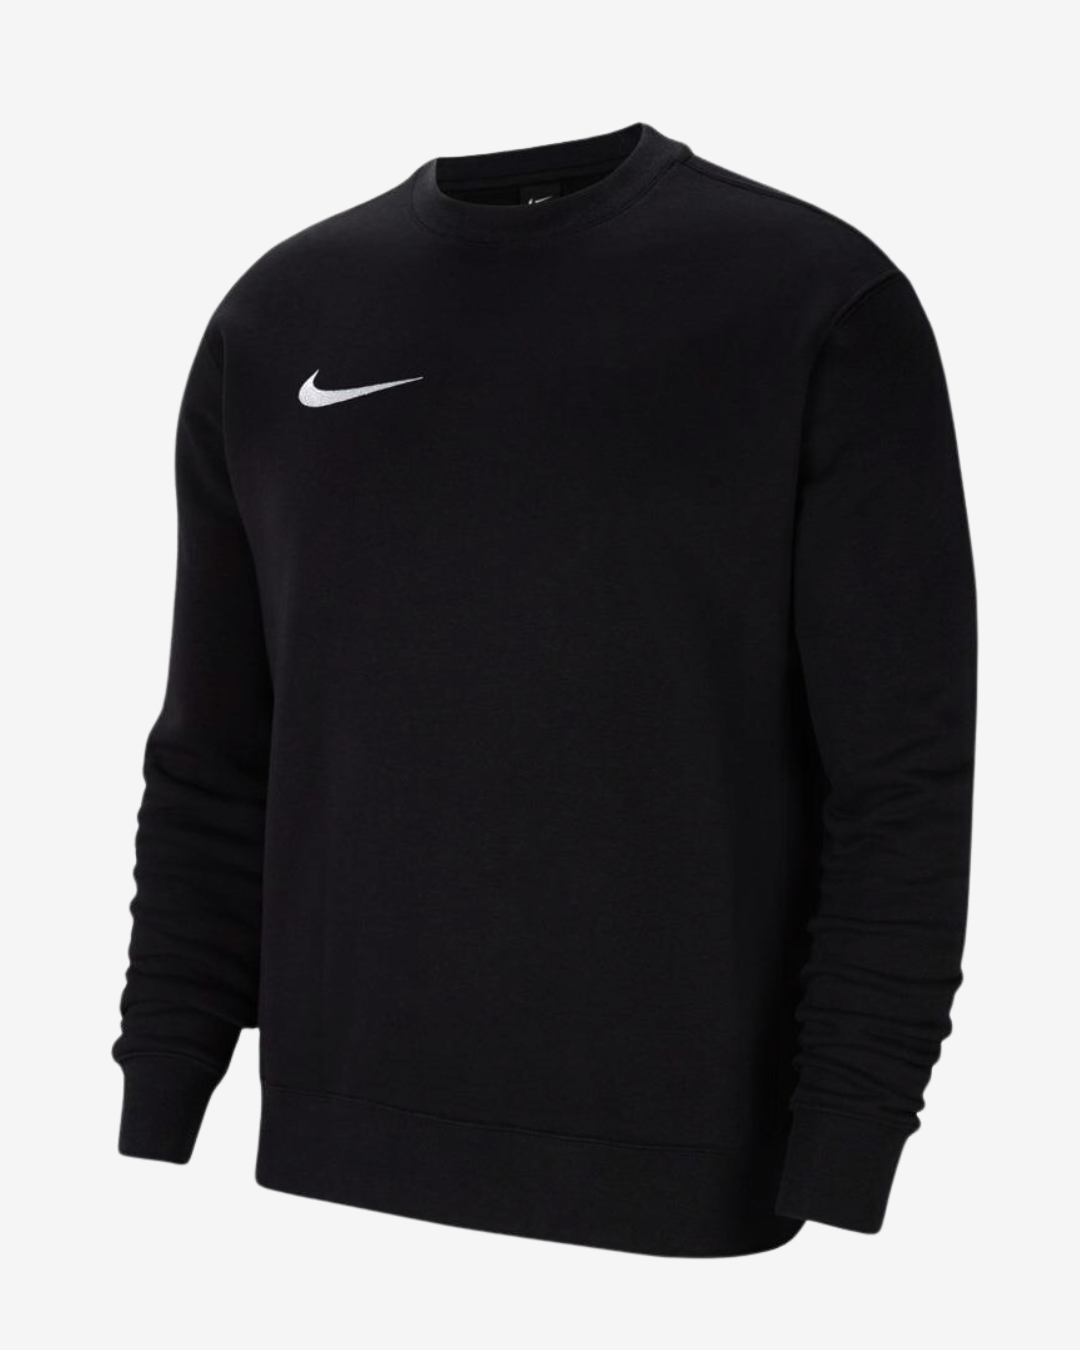 Billede af Nike Fleece park 20 sweatshirt - Sort - Str. S - Modish.dk